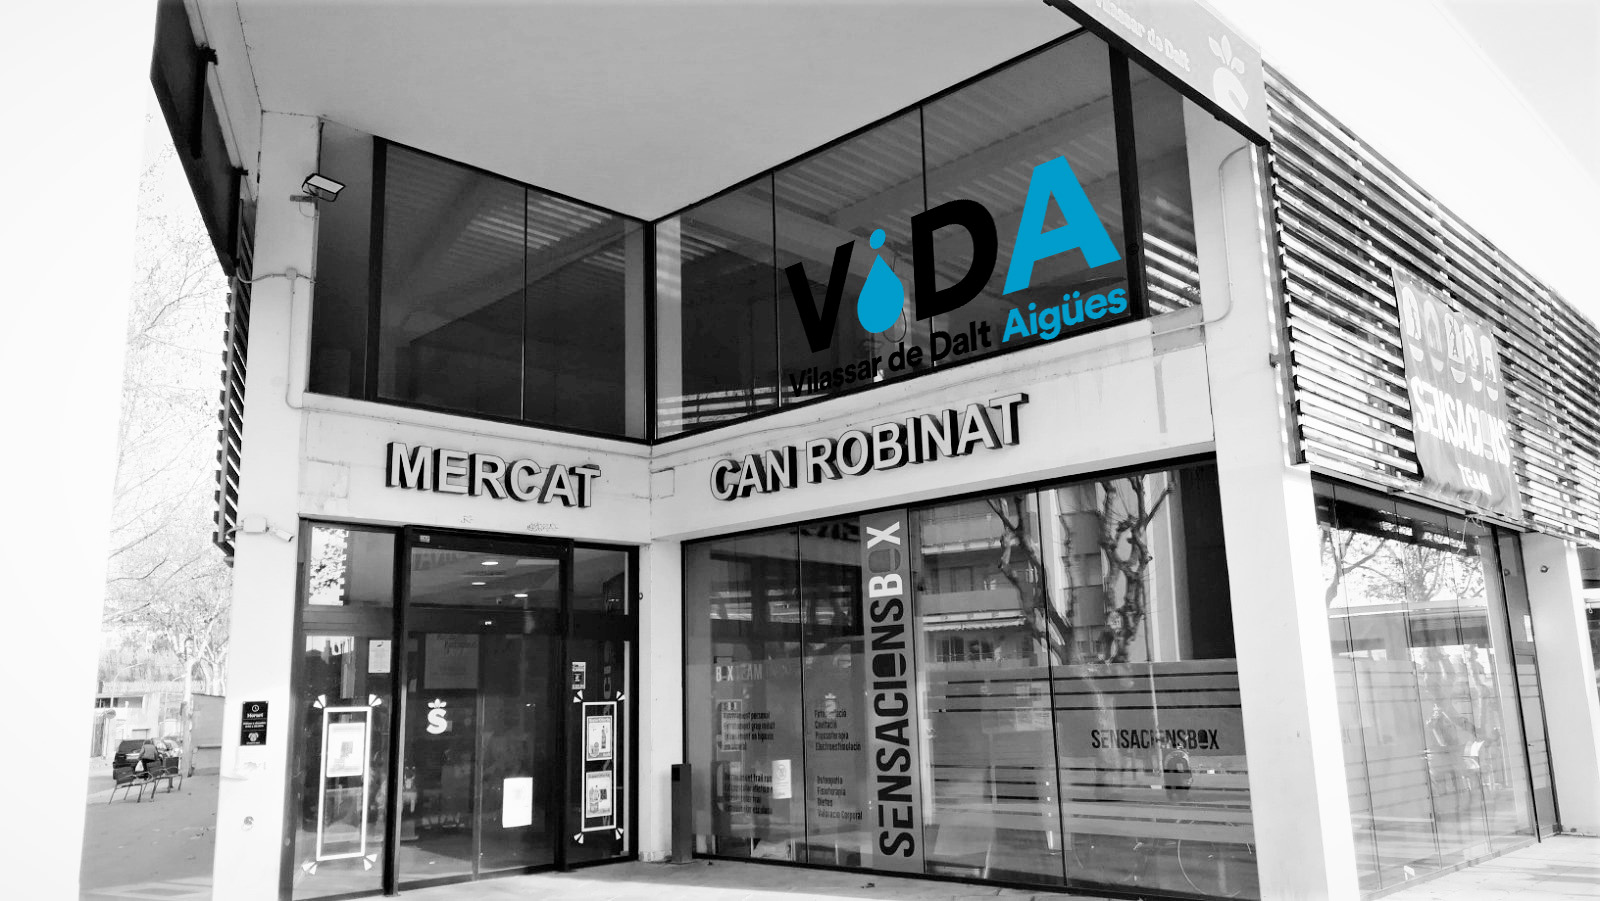 Oficines "Vilassar de Dalt Aigües EPEL - ViDA"